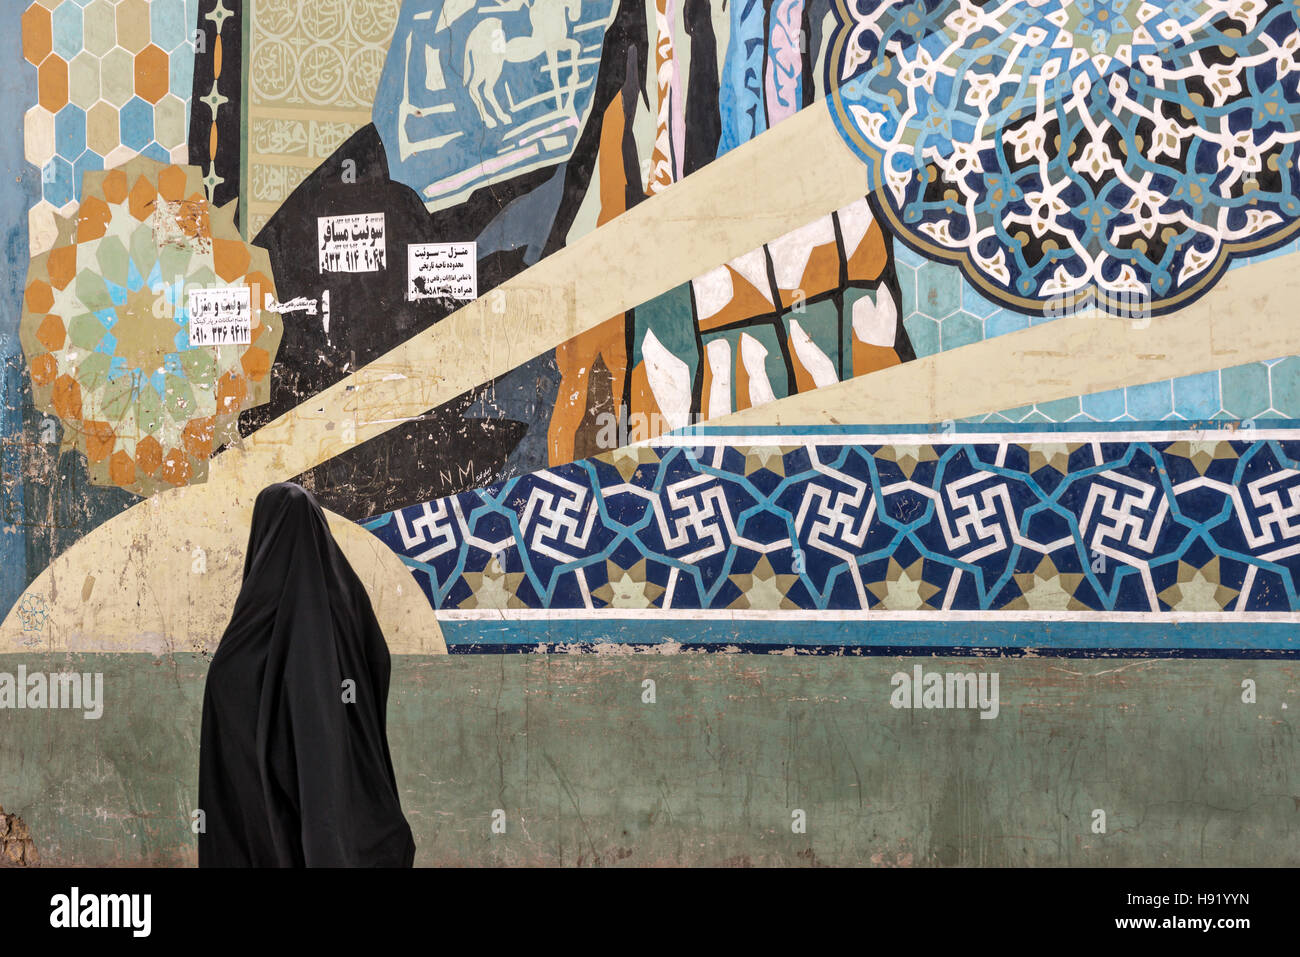 Grafiti and woman in chador Shiraz Iran Stock Photo